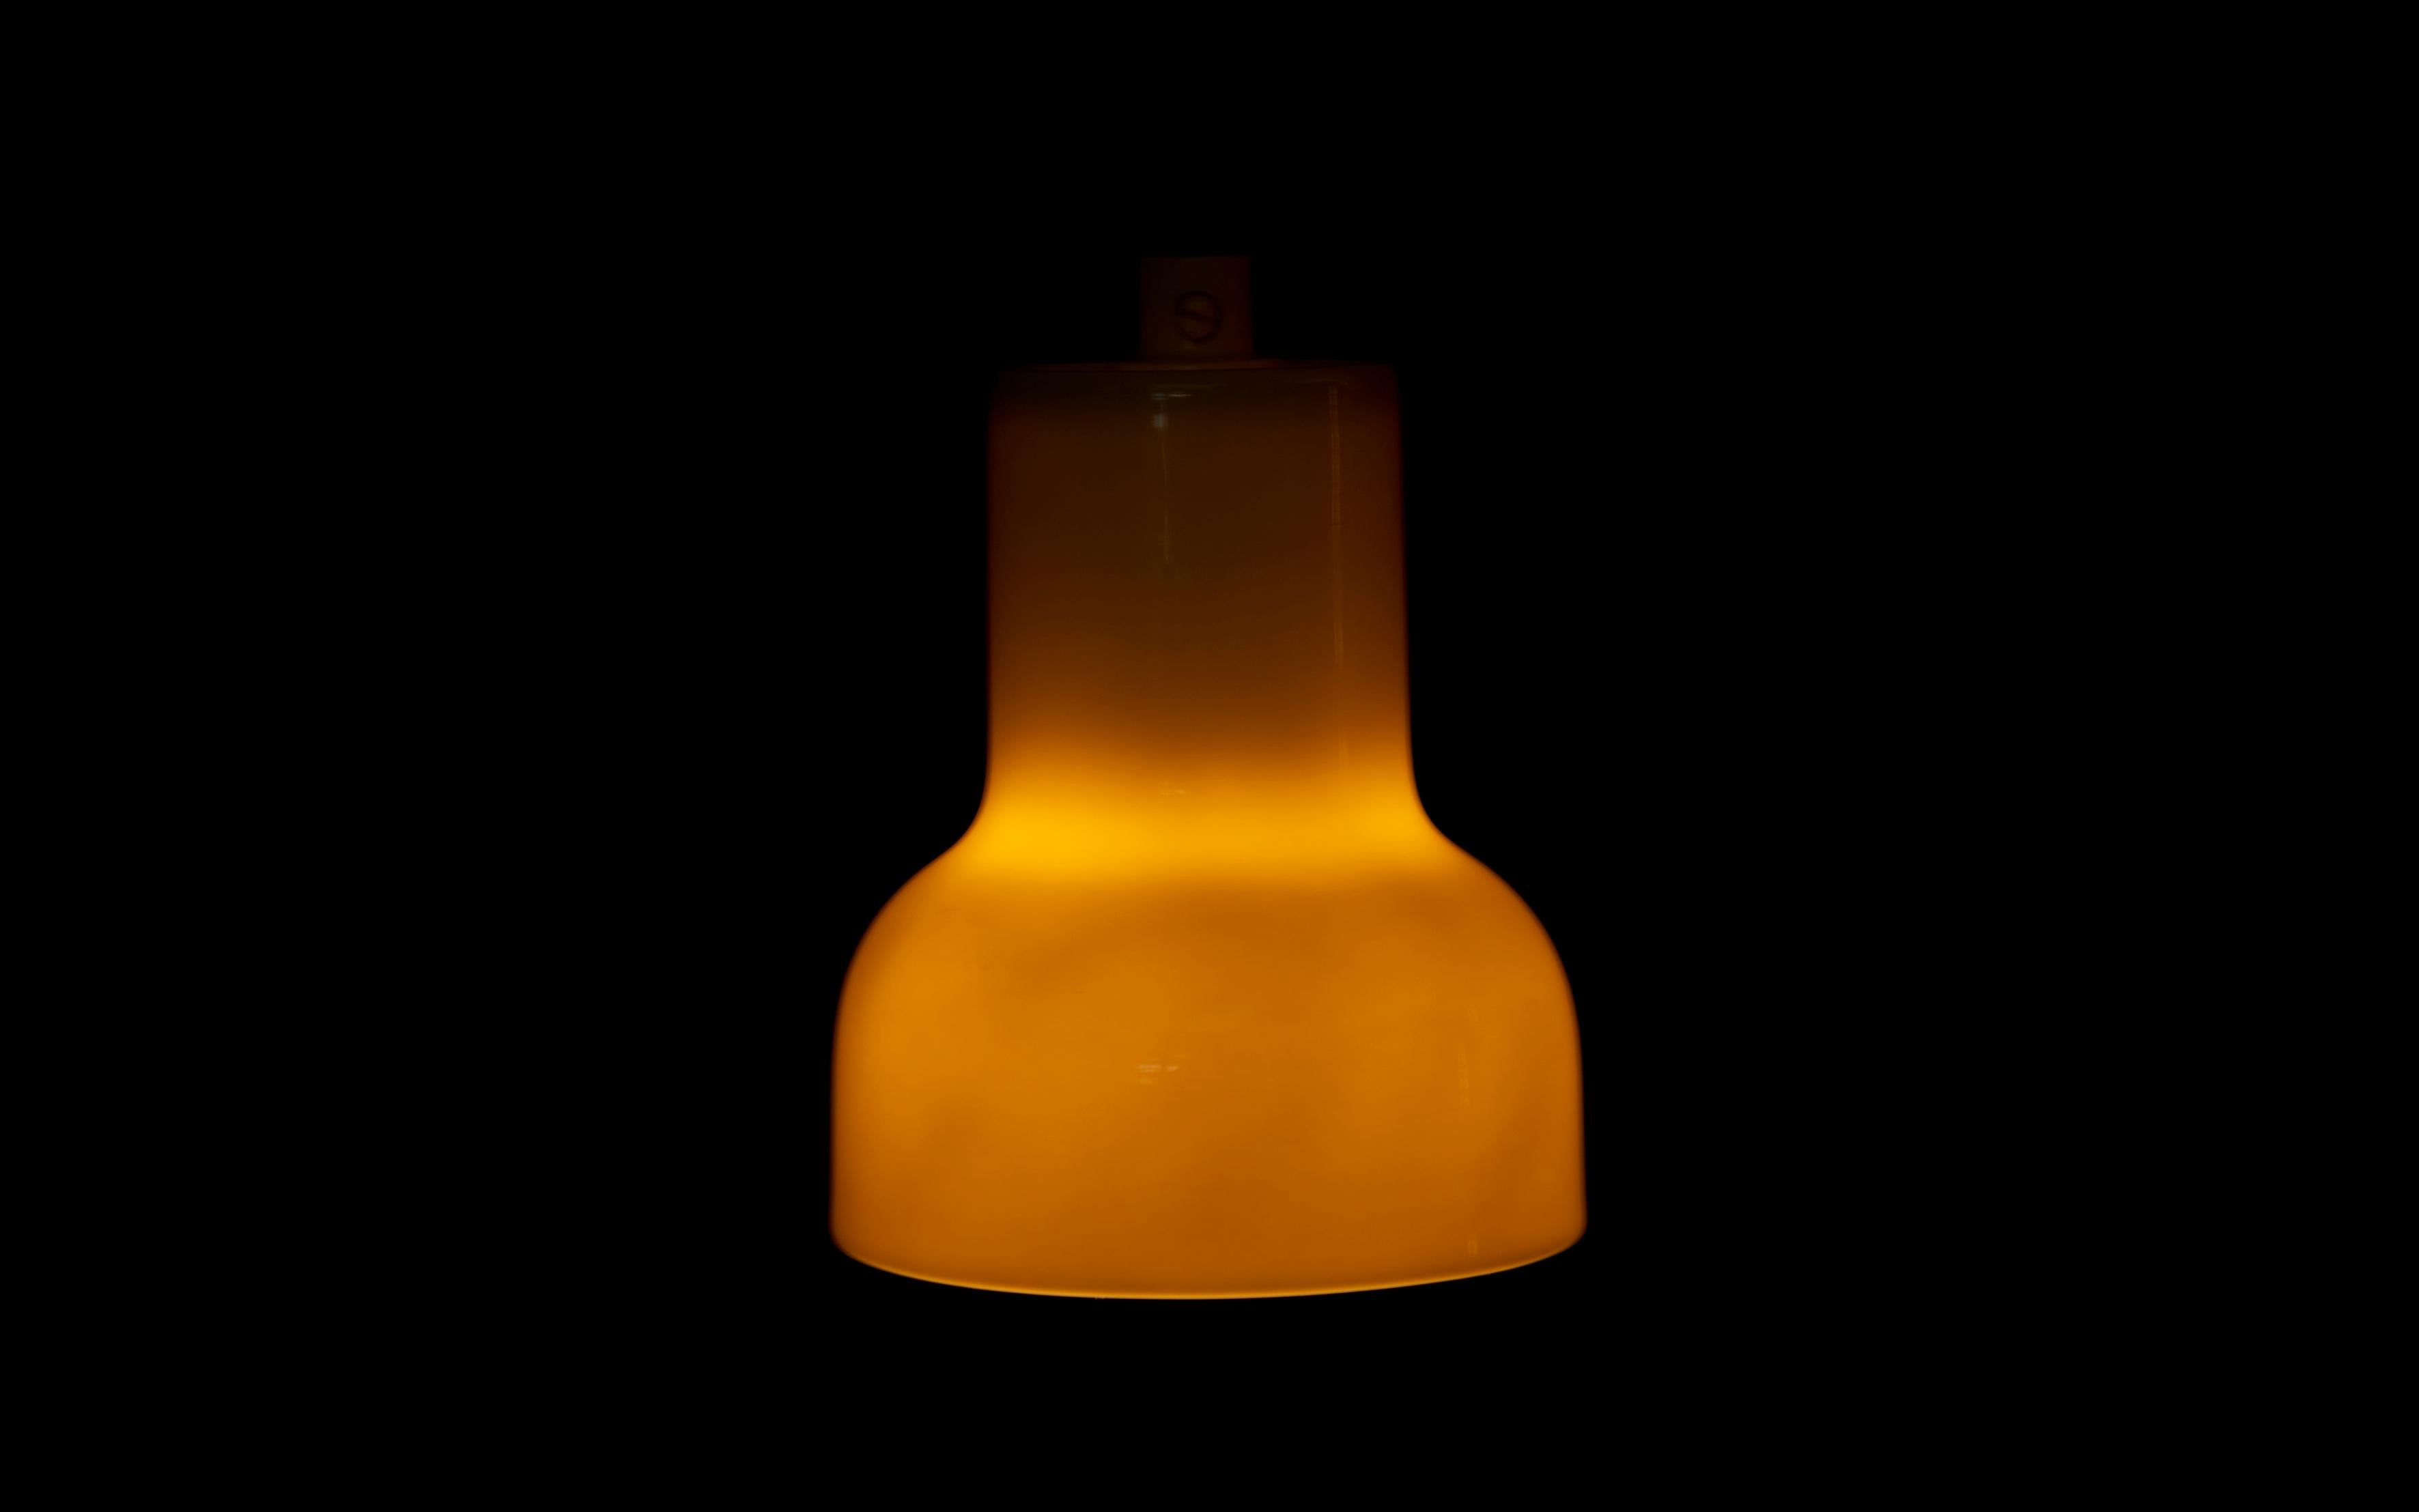 Lampe pendante Labellisée du fabricant de porcelaine danois Bing & Grøndahl. Douille : 1 x E27. La lampe a un aspect simple mais délicat et est dans un bon état vintage. Le fabricant danois de porcelaine Bing & Grøndahl a été fondé en 1853 par le